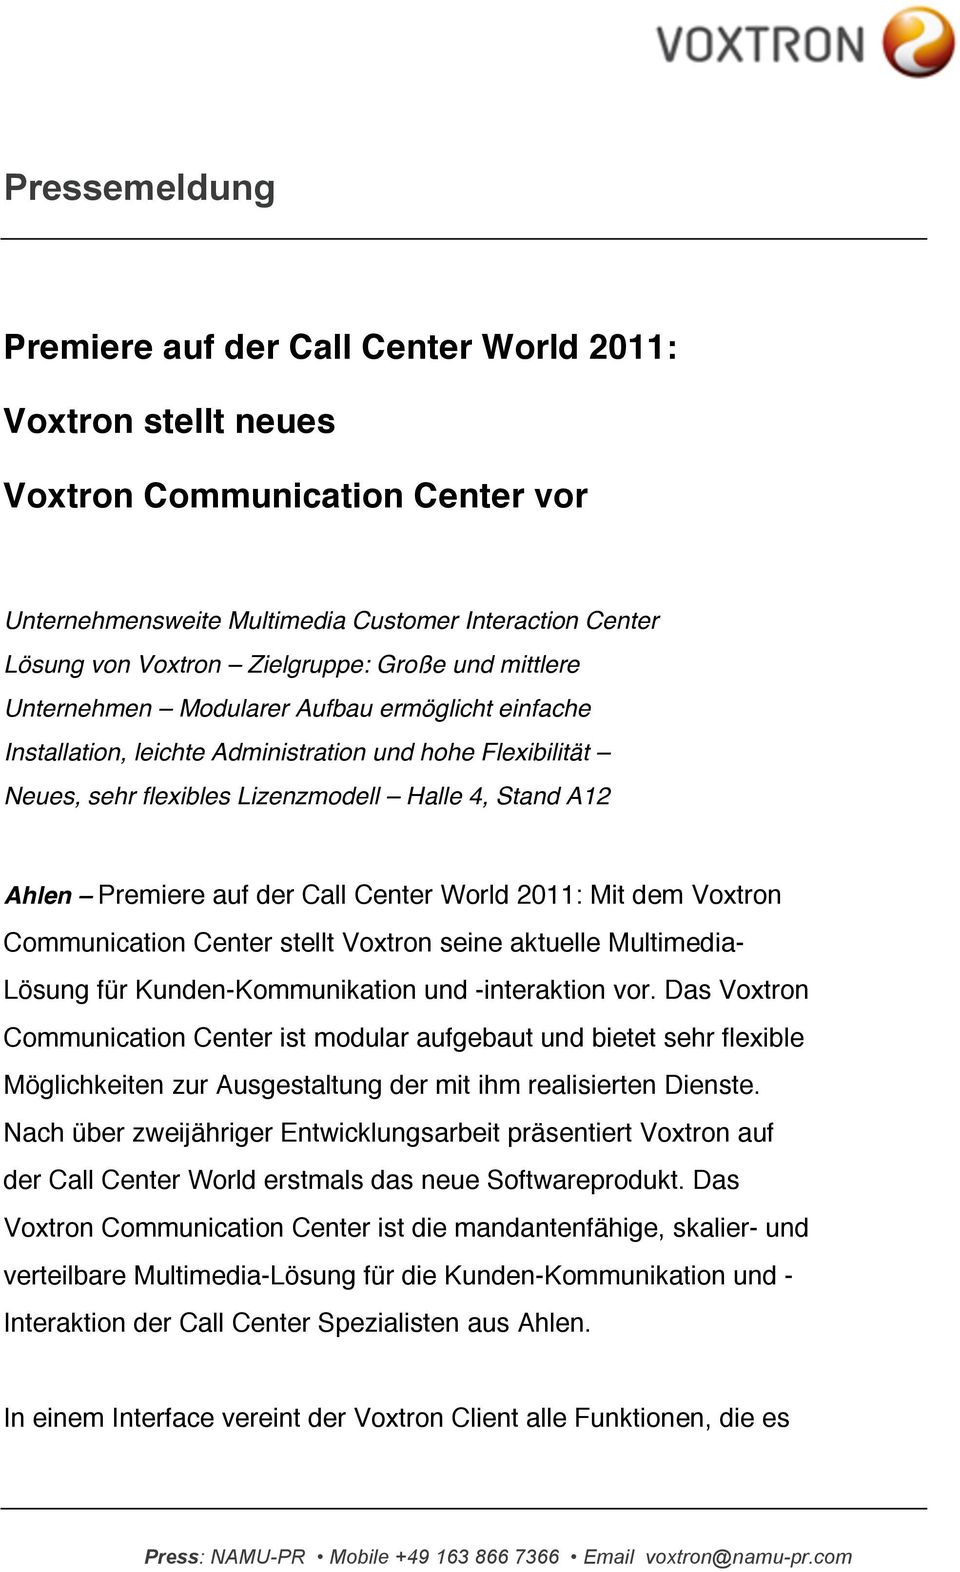 Center World 2011: Mit dem Voxtron Communication Center stellt Voxtron seine aktuelle Multimedia- Lösung für Kunden-Kommunikation und -interaktion vor.